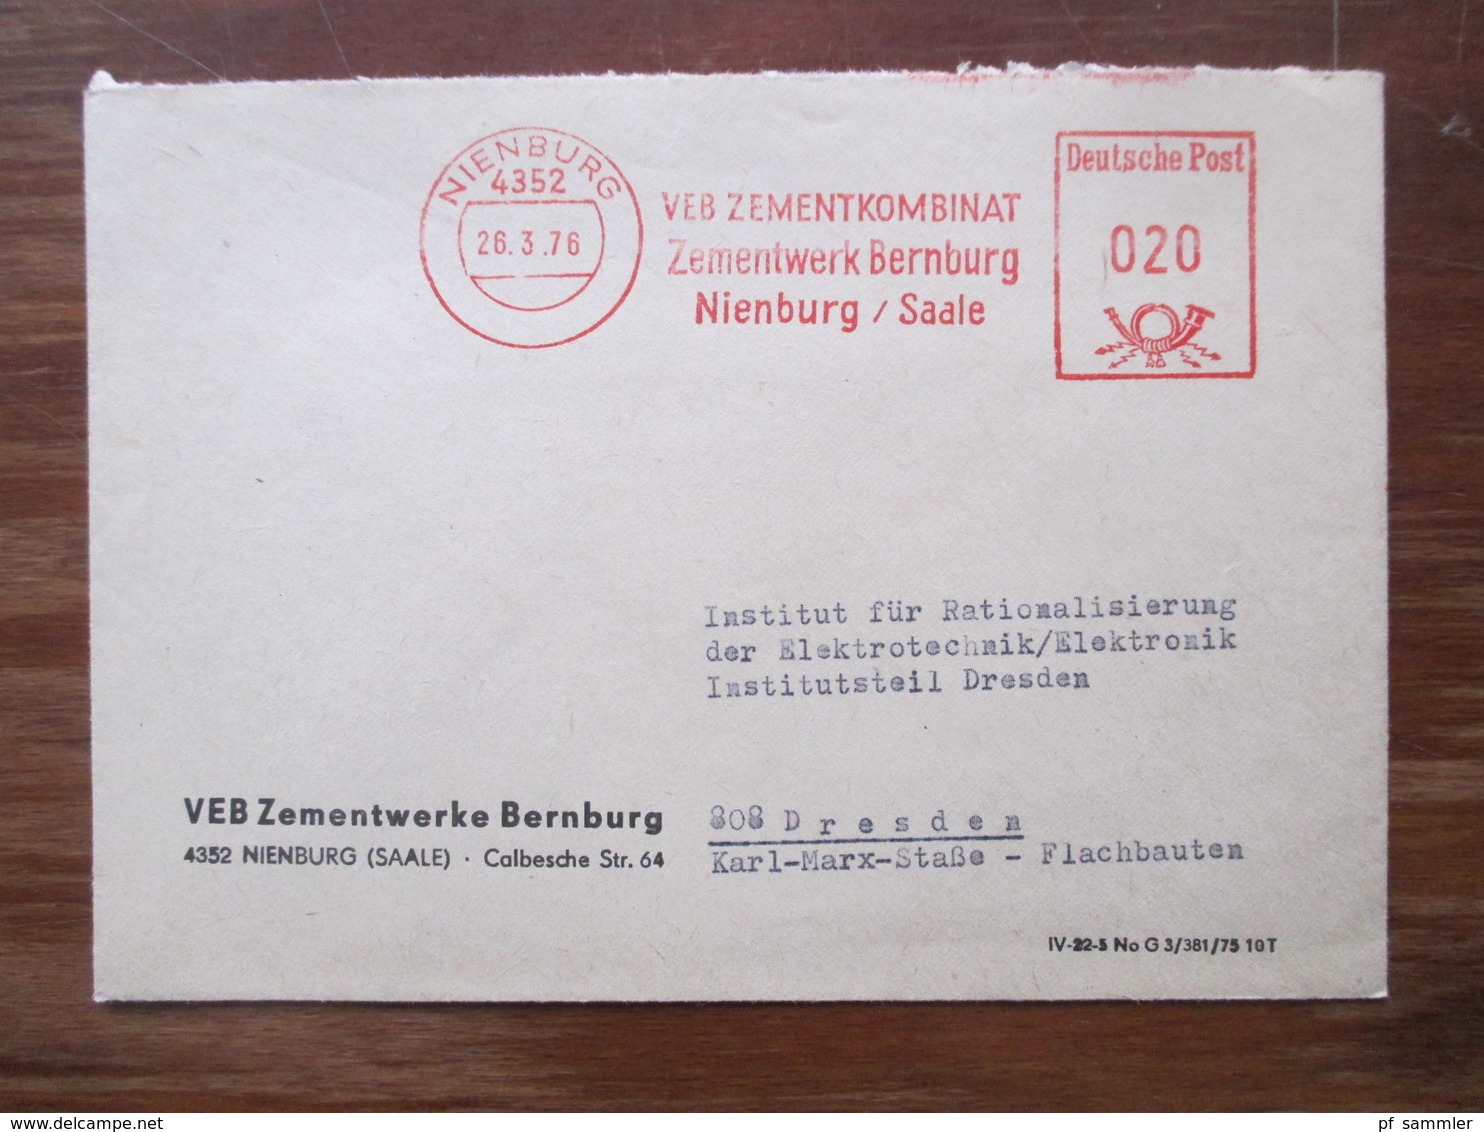 DDR Deutsche Post 1972 - 76 Freistempel Belege VEB Zementkombinat Zementwerk Nienburg Saale nach Dresden gesendet!